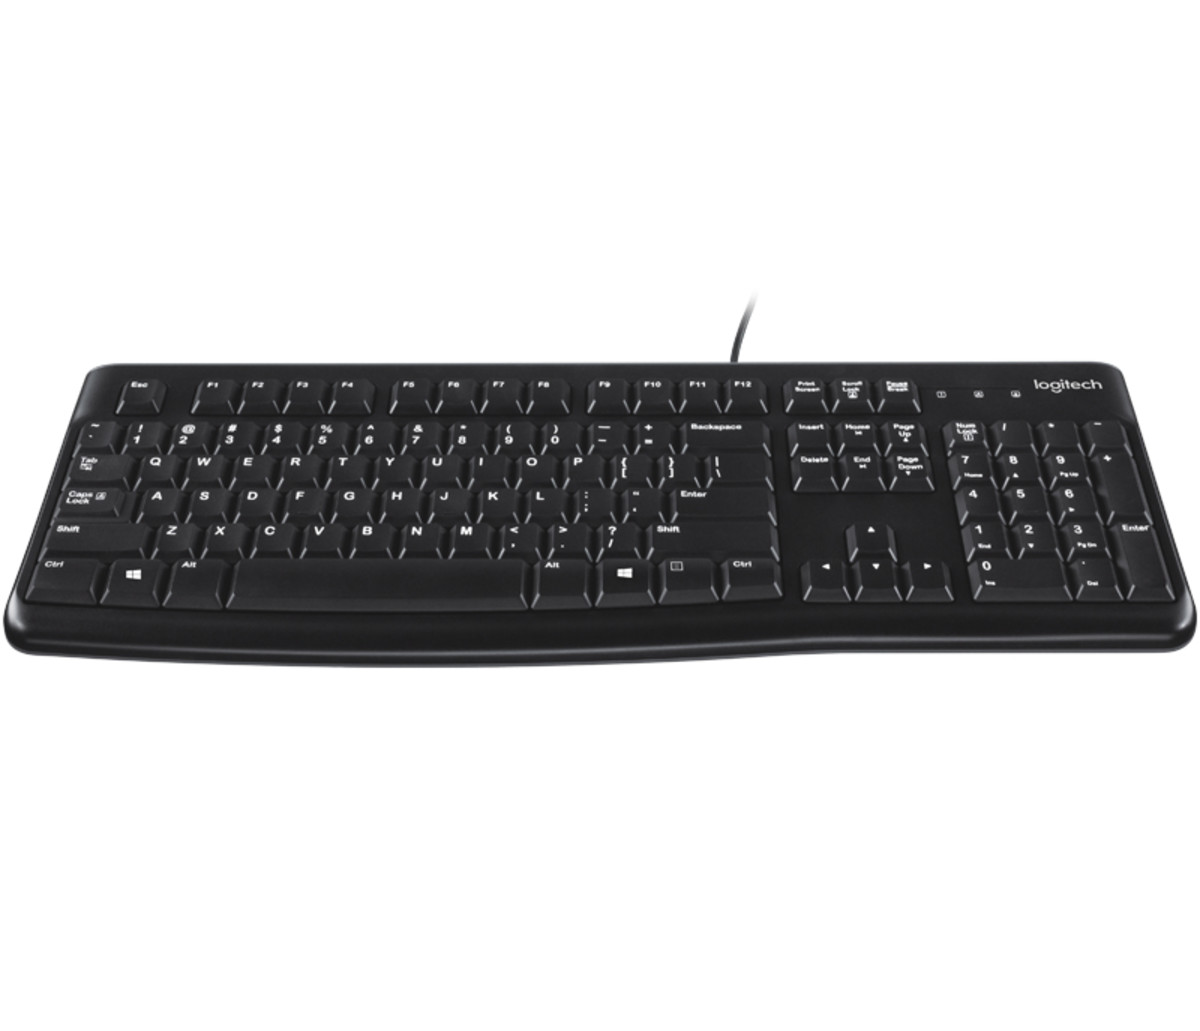 K120 Corded Keyboard